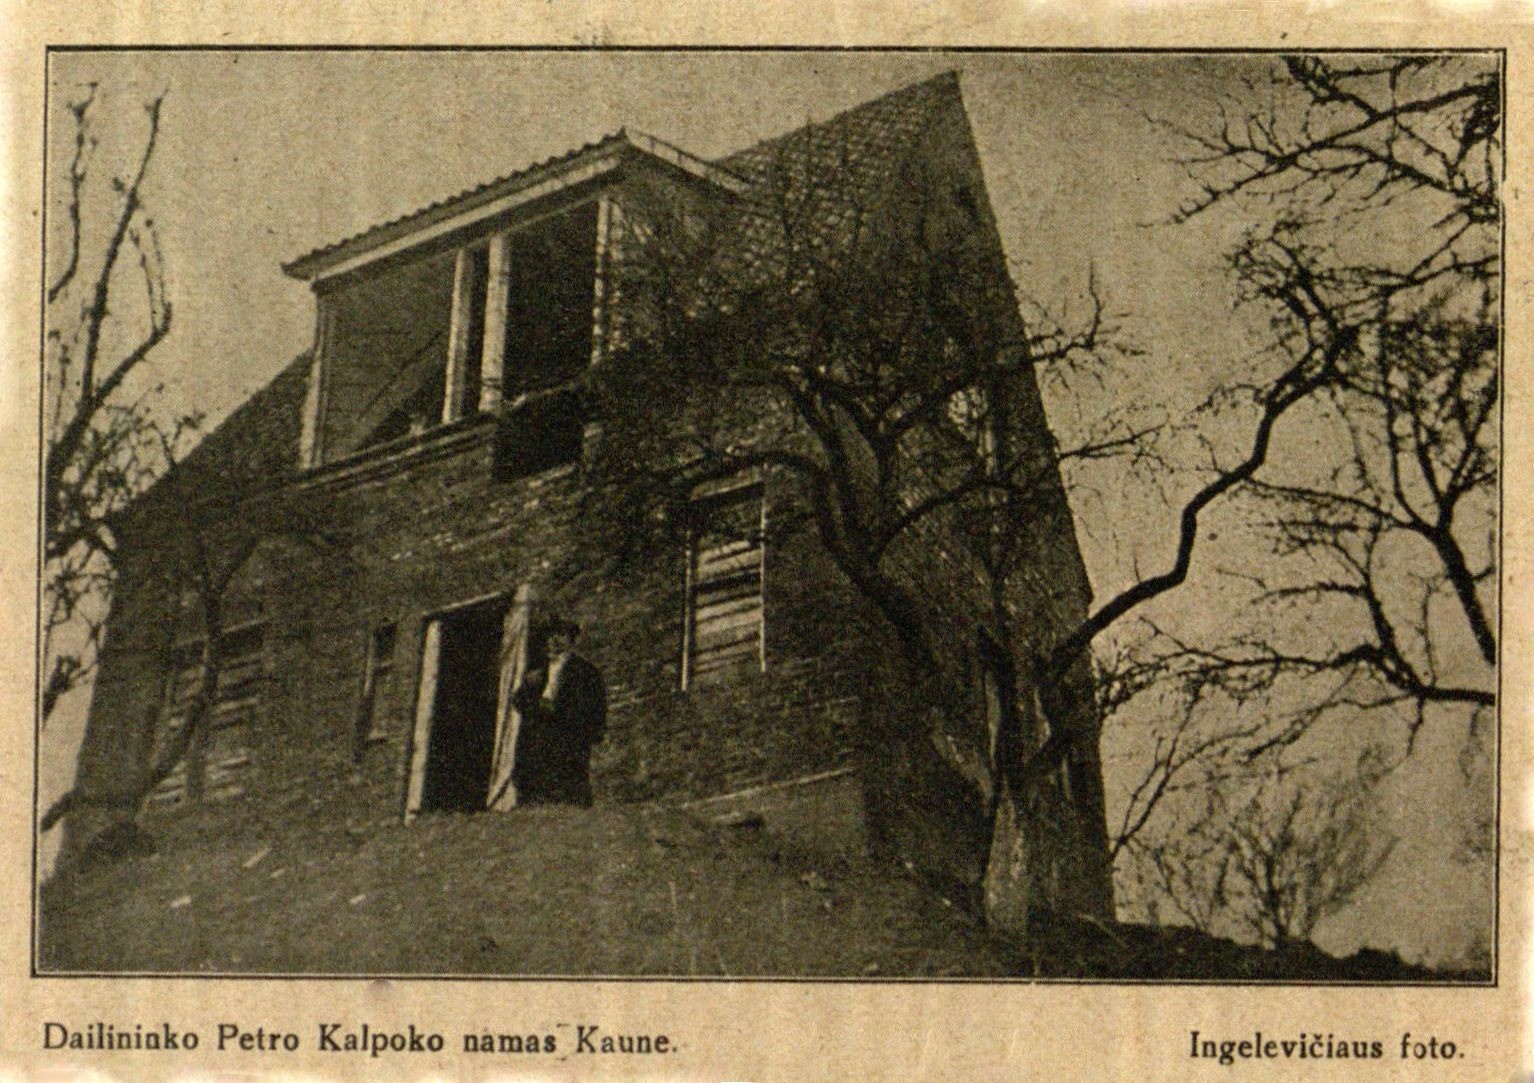 Dailininko Petro Kalpoko namas Kaune: Ingelevičiaus foto // Naujas žodis. – 1930, Nr. 5, p. 106.